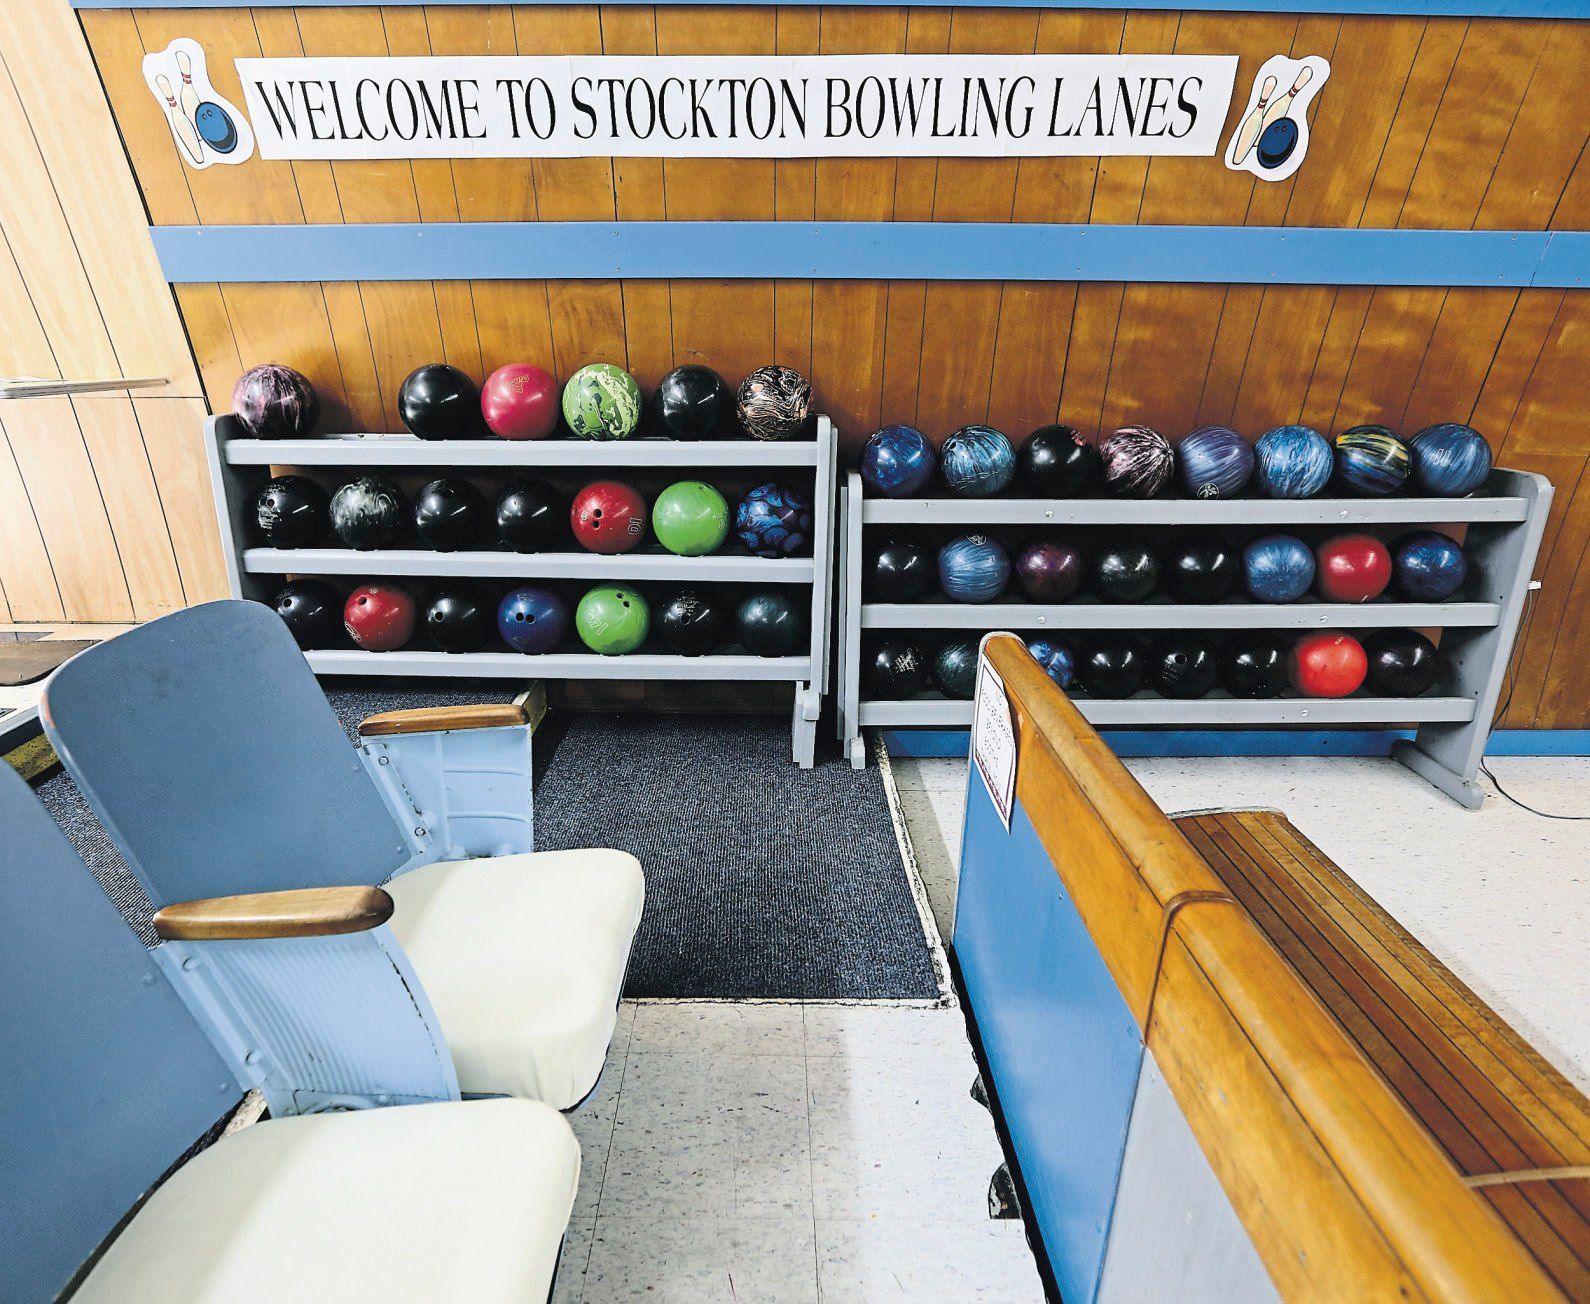 Vintage seats and bowling balls at Stockton Bowling Lanes.    PHOTO CREDIT: Dave Kettering